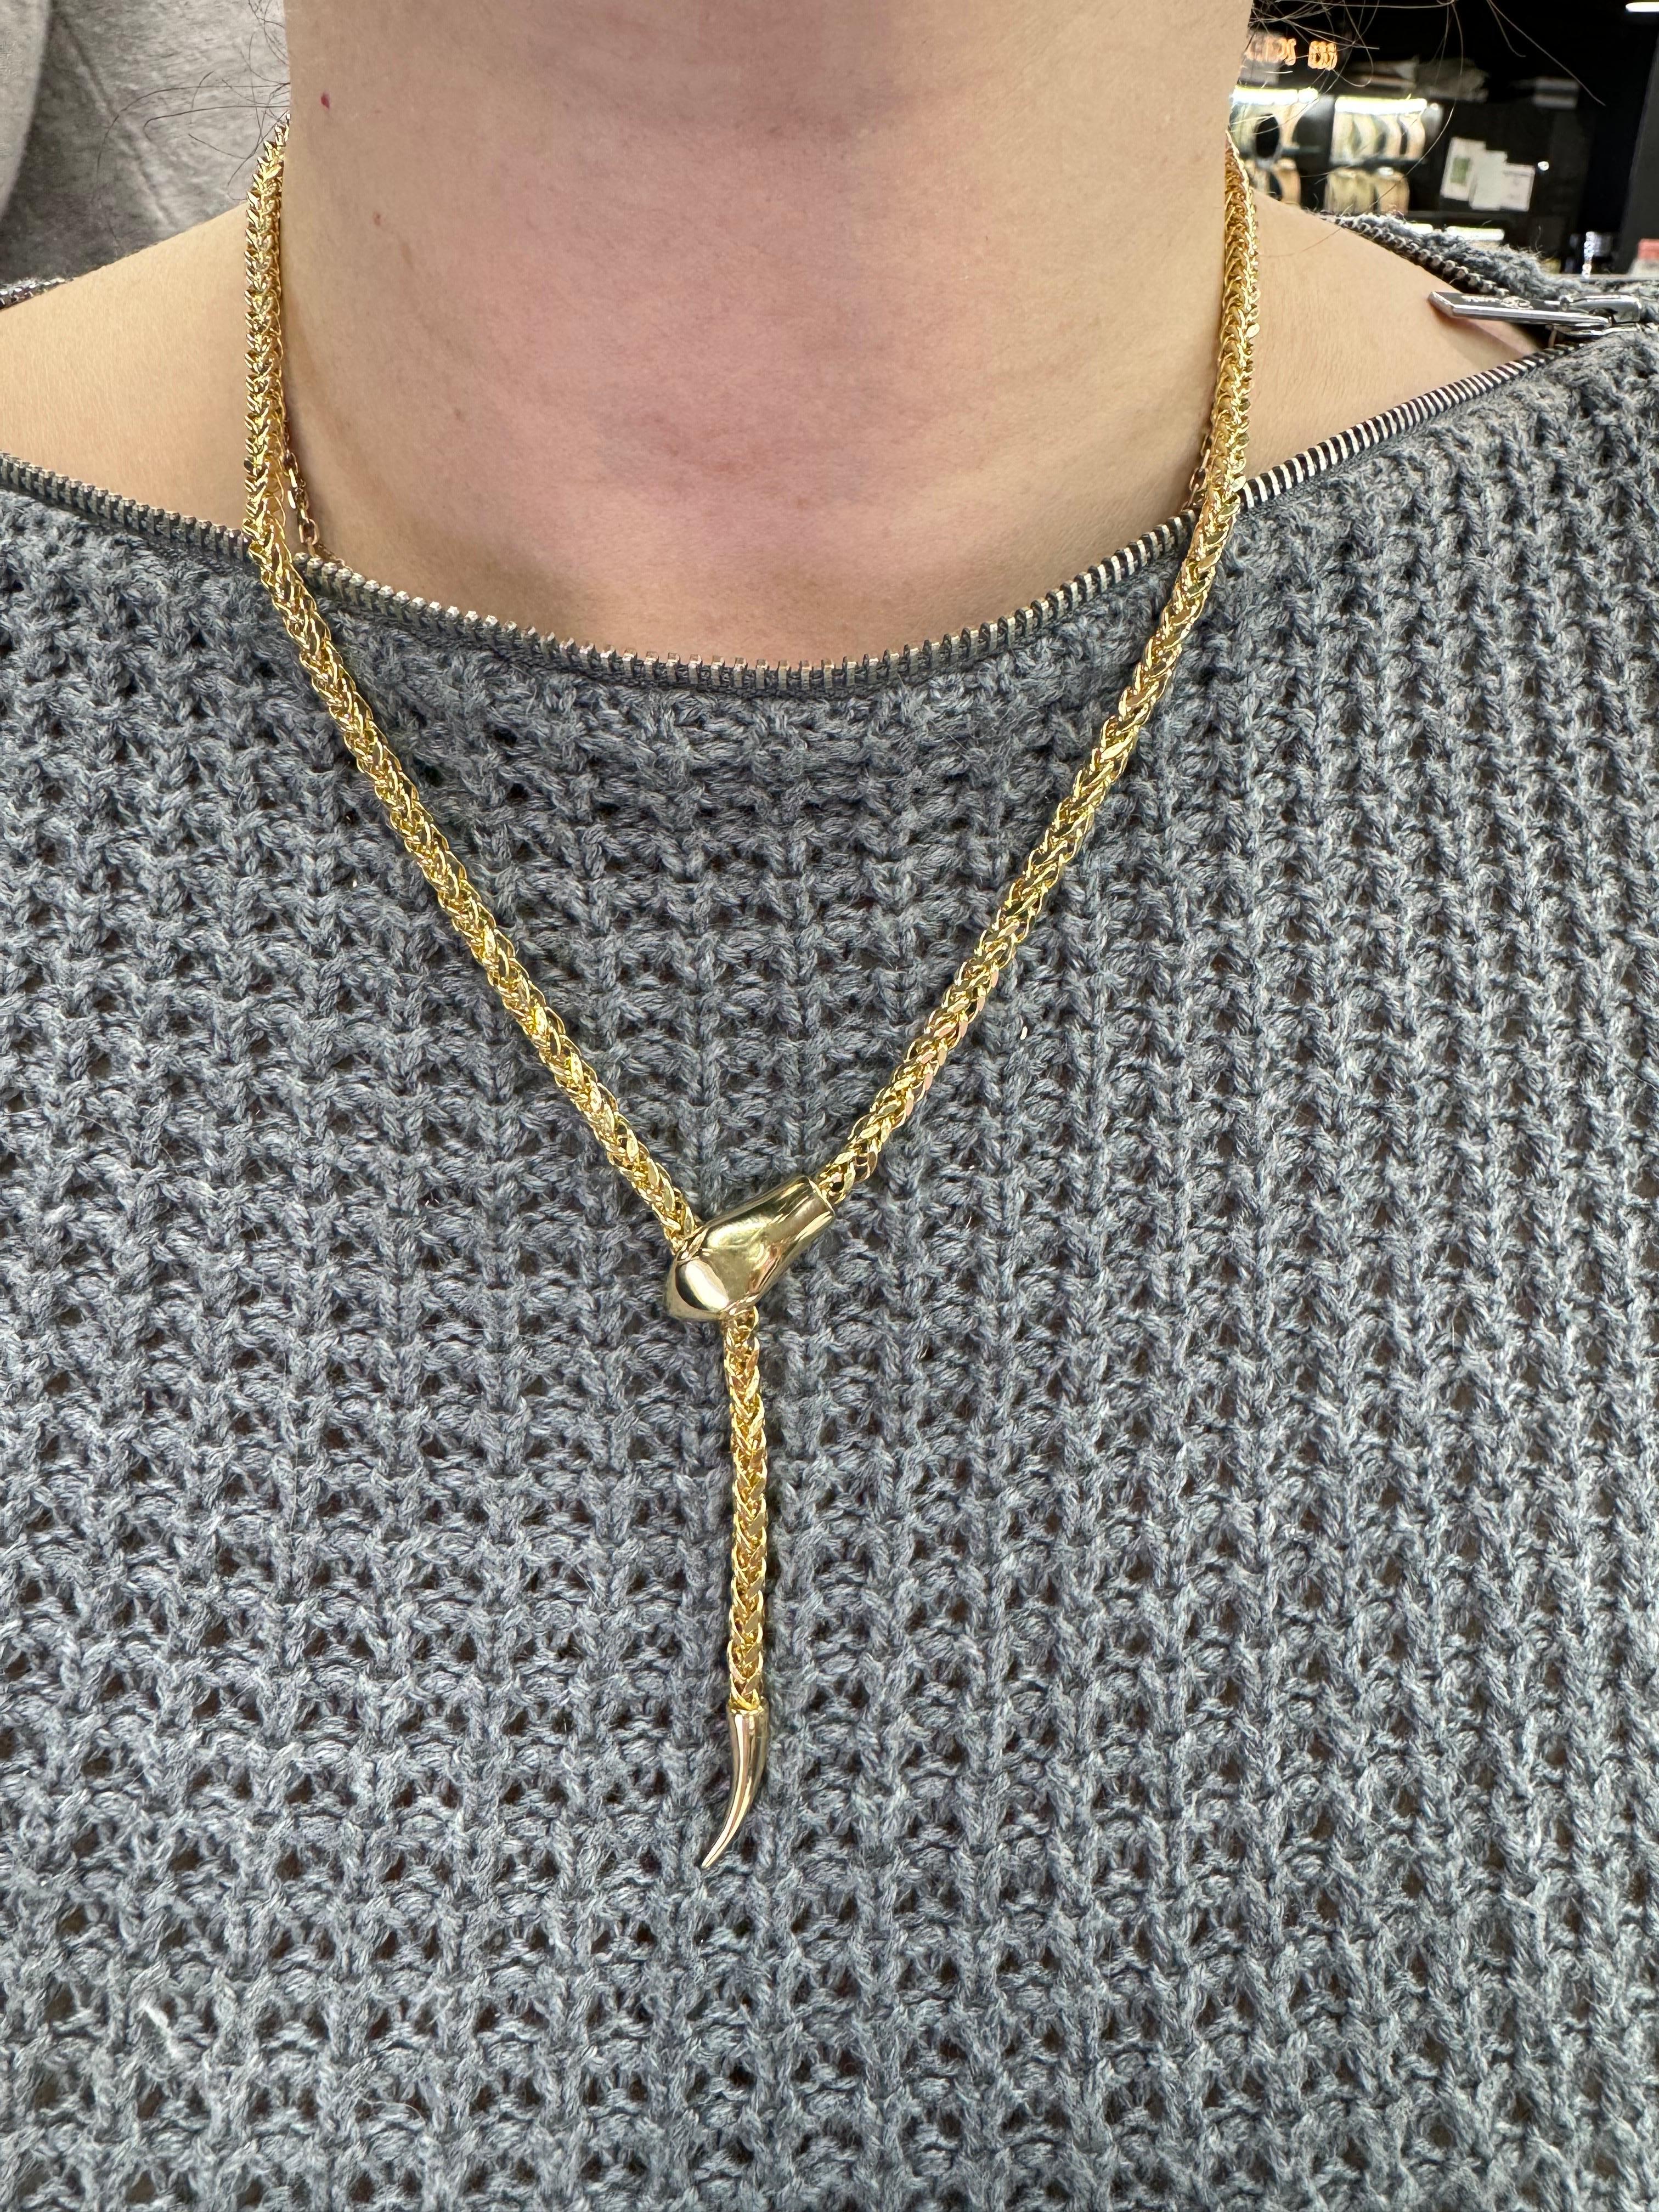 Fabriqué en Italie, ce collier présente un motif de serpent rendant le lariat réglable, en or jaune 14 carats. 
Peut être porté en tour de cou ou plus long. 

Disponible en trois tailles différentes. 
DM pour plus d'informations et de photos. 